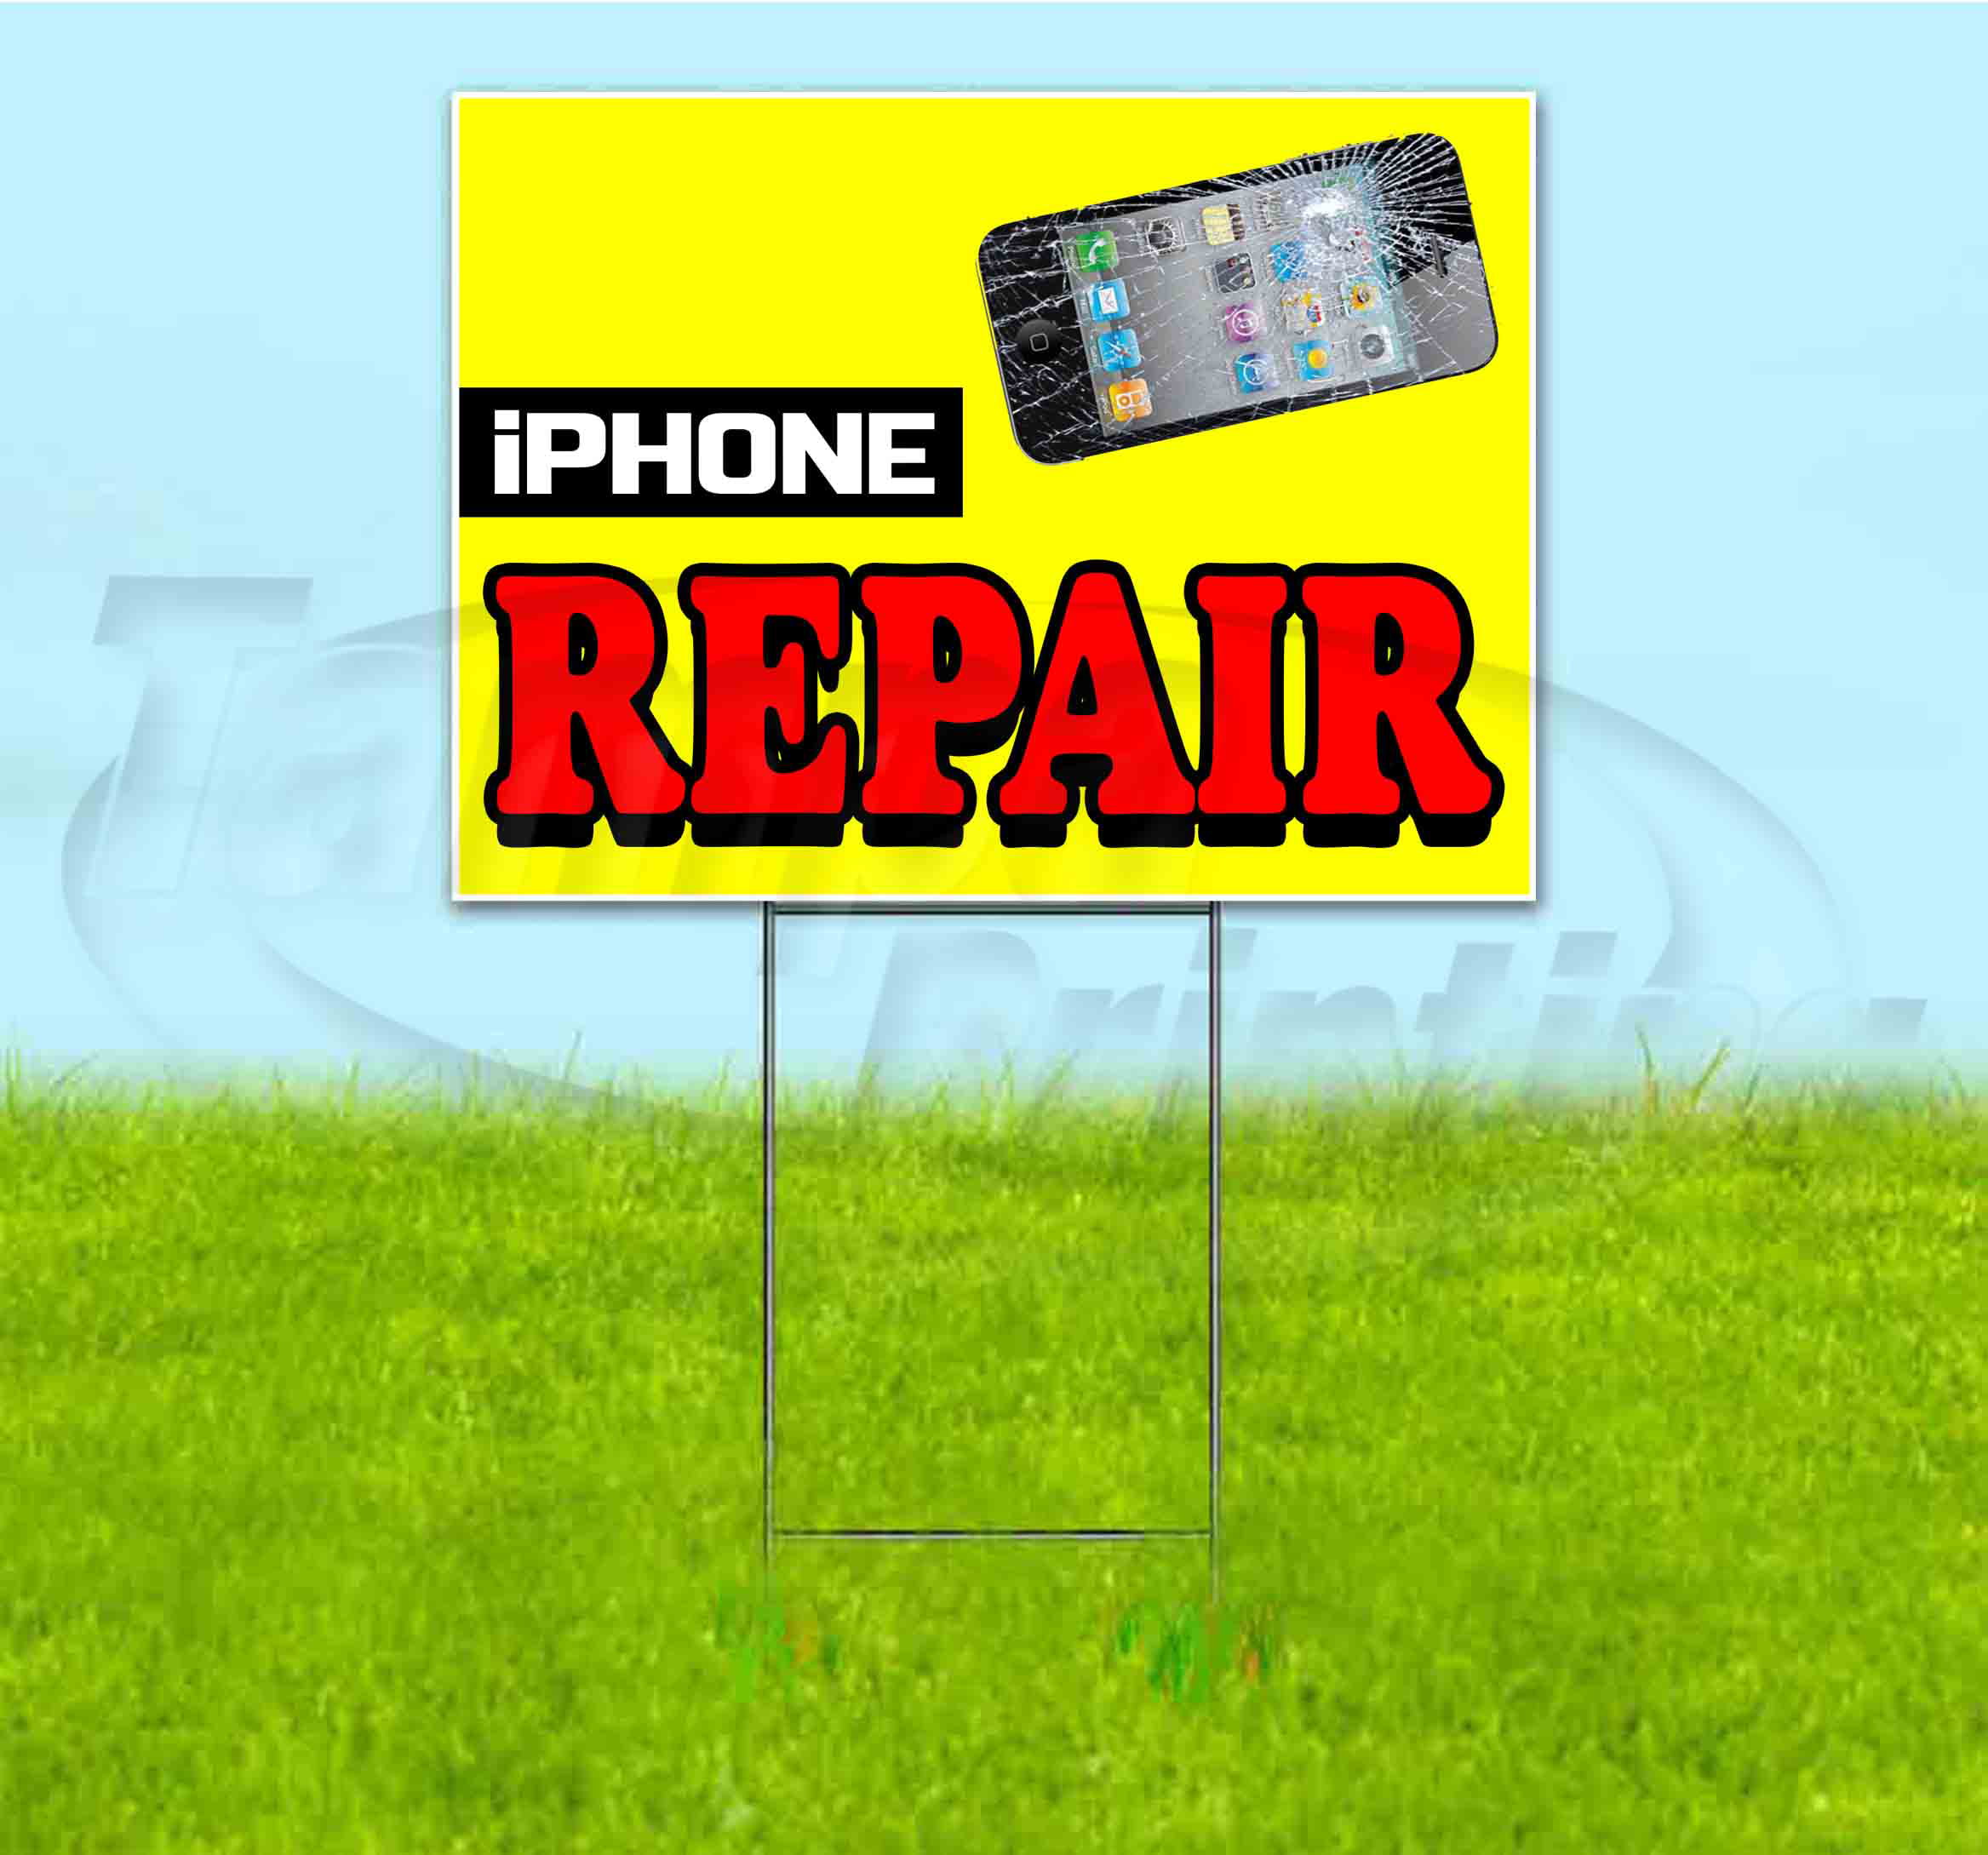 iPhone Repair Services Plastic Indoor Outdoor Coroplast Yard Sign